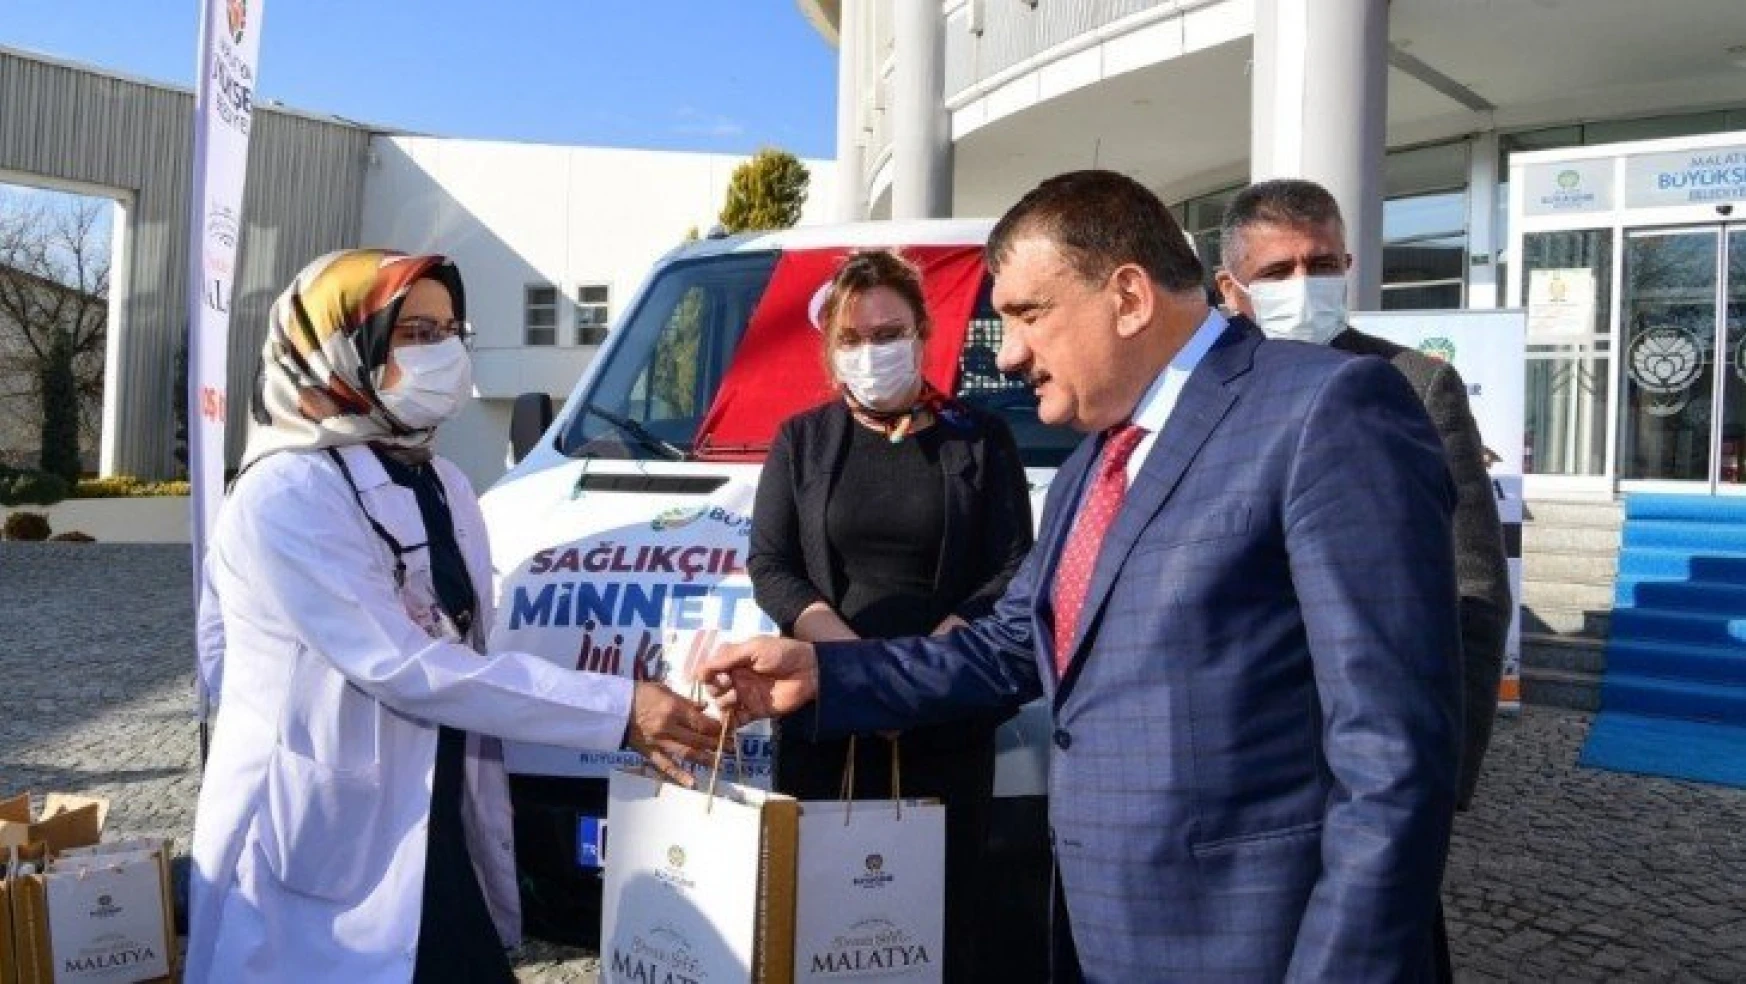 Malatya Büyükşehir Belediyesi'nden sağlıkçılara hediye paketi